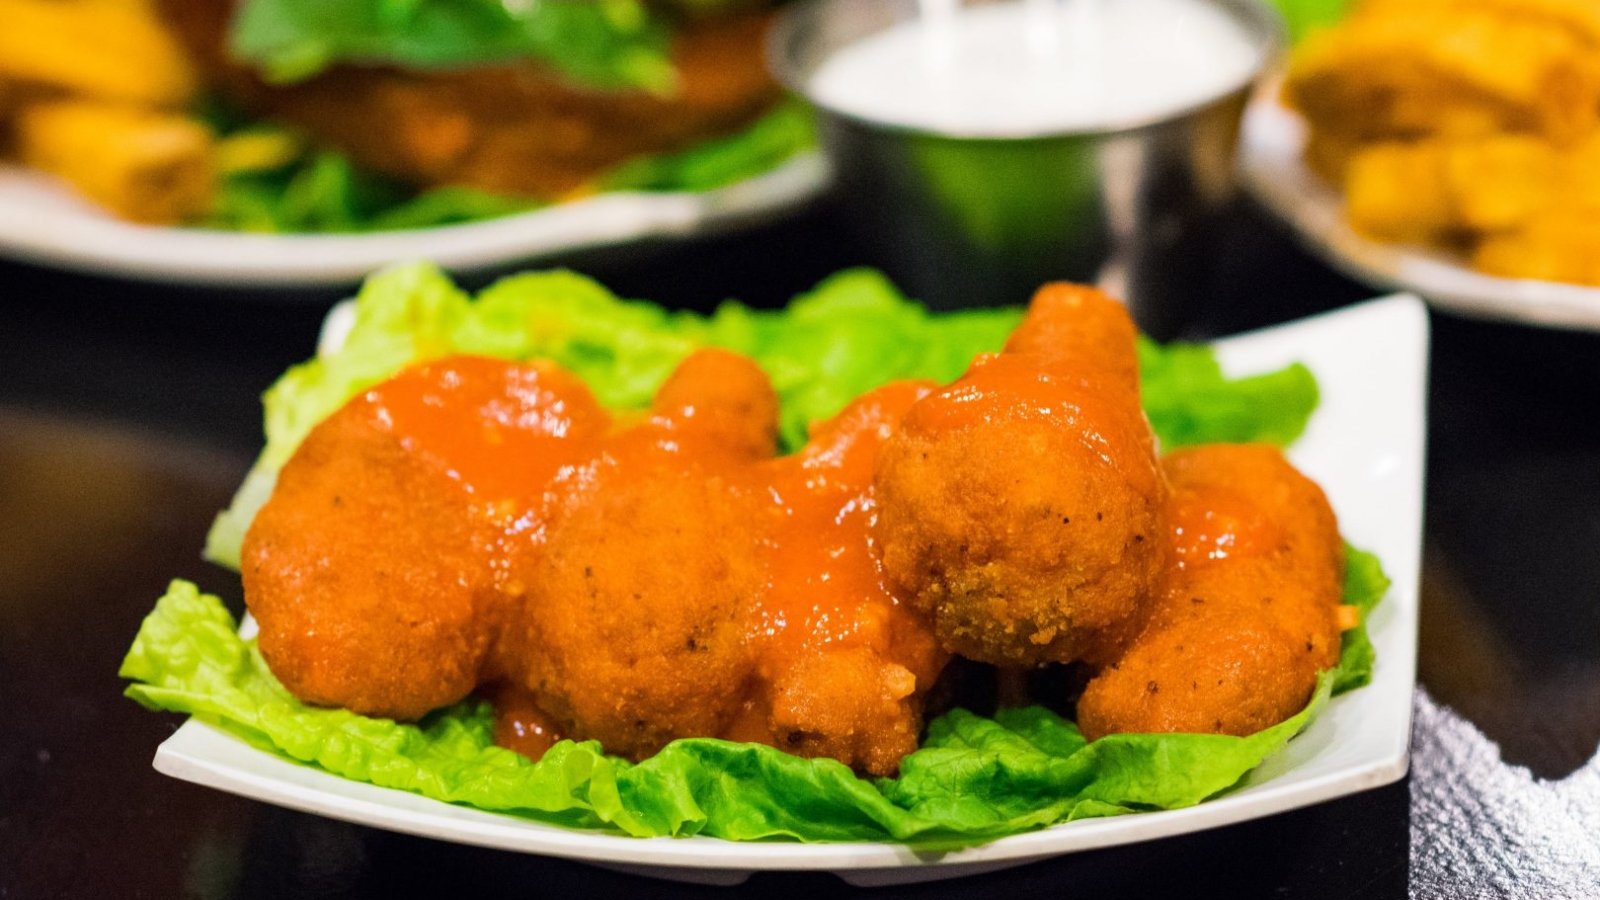 Vegan Wings Make Up 40% of Top Chicken Restaurant's Sales